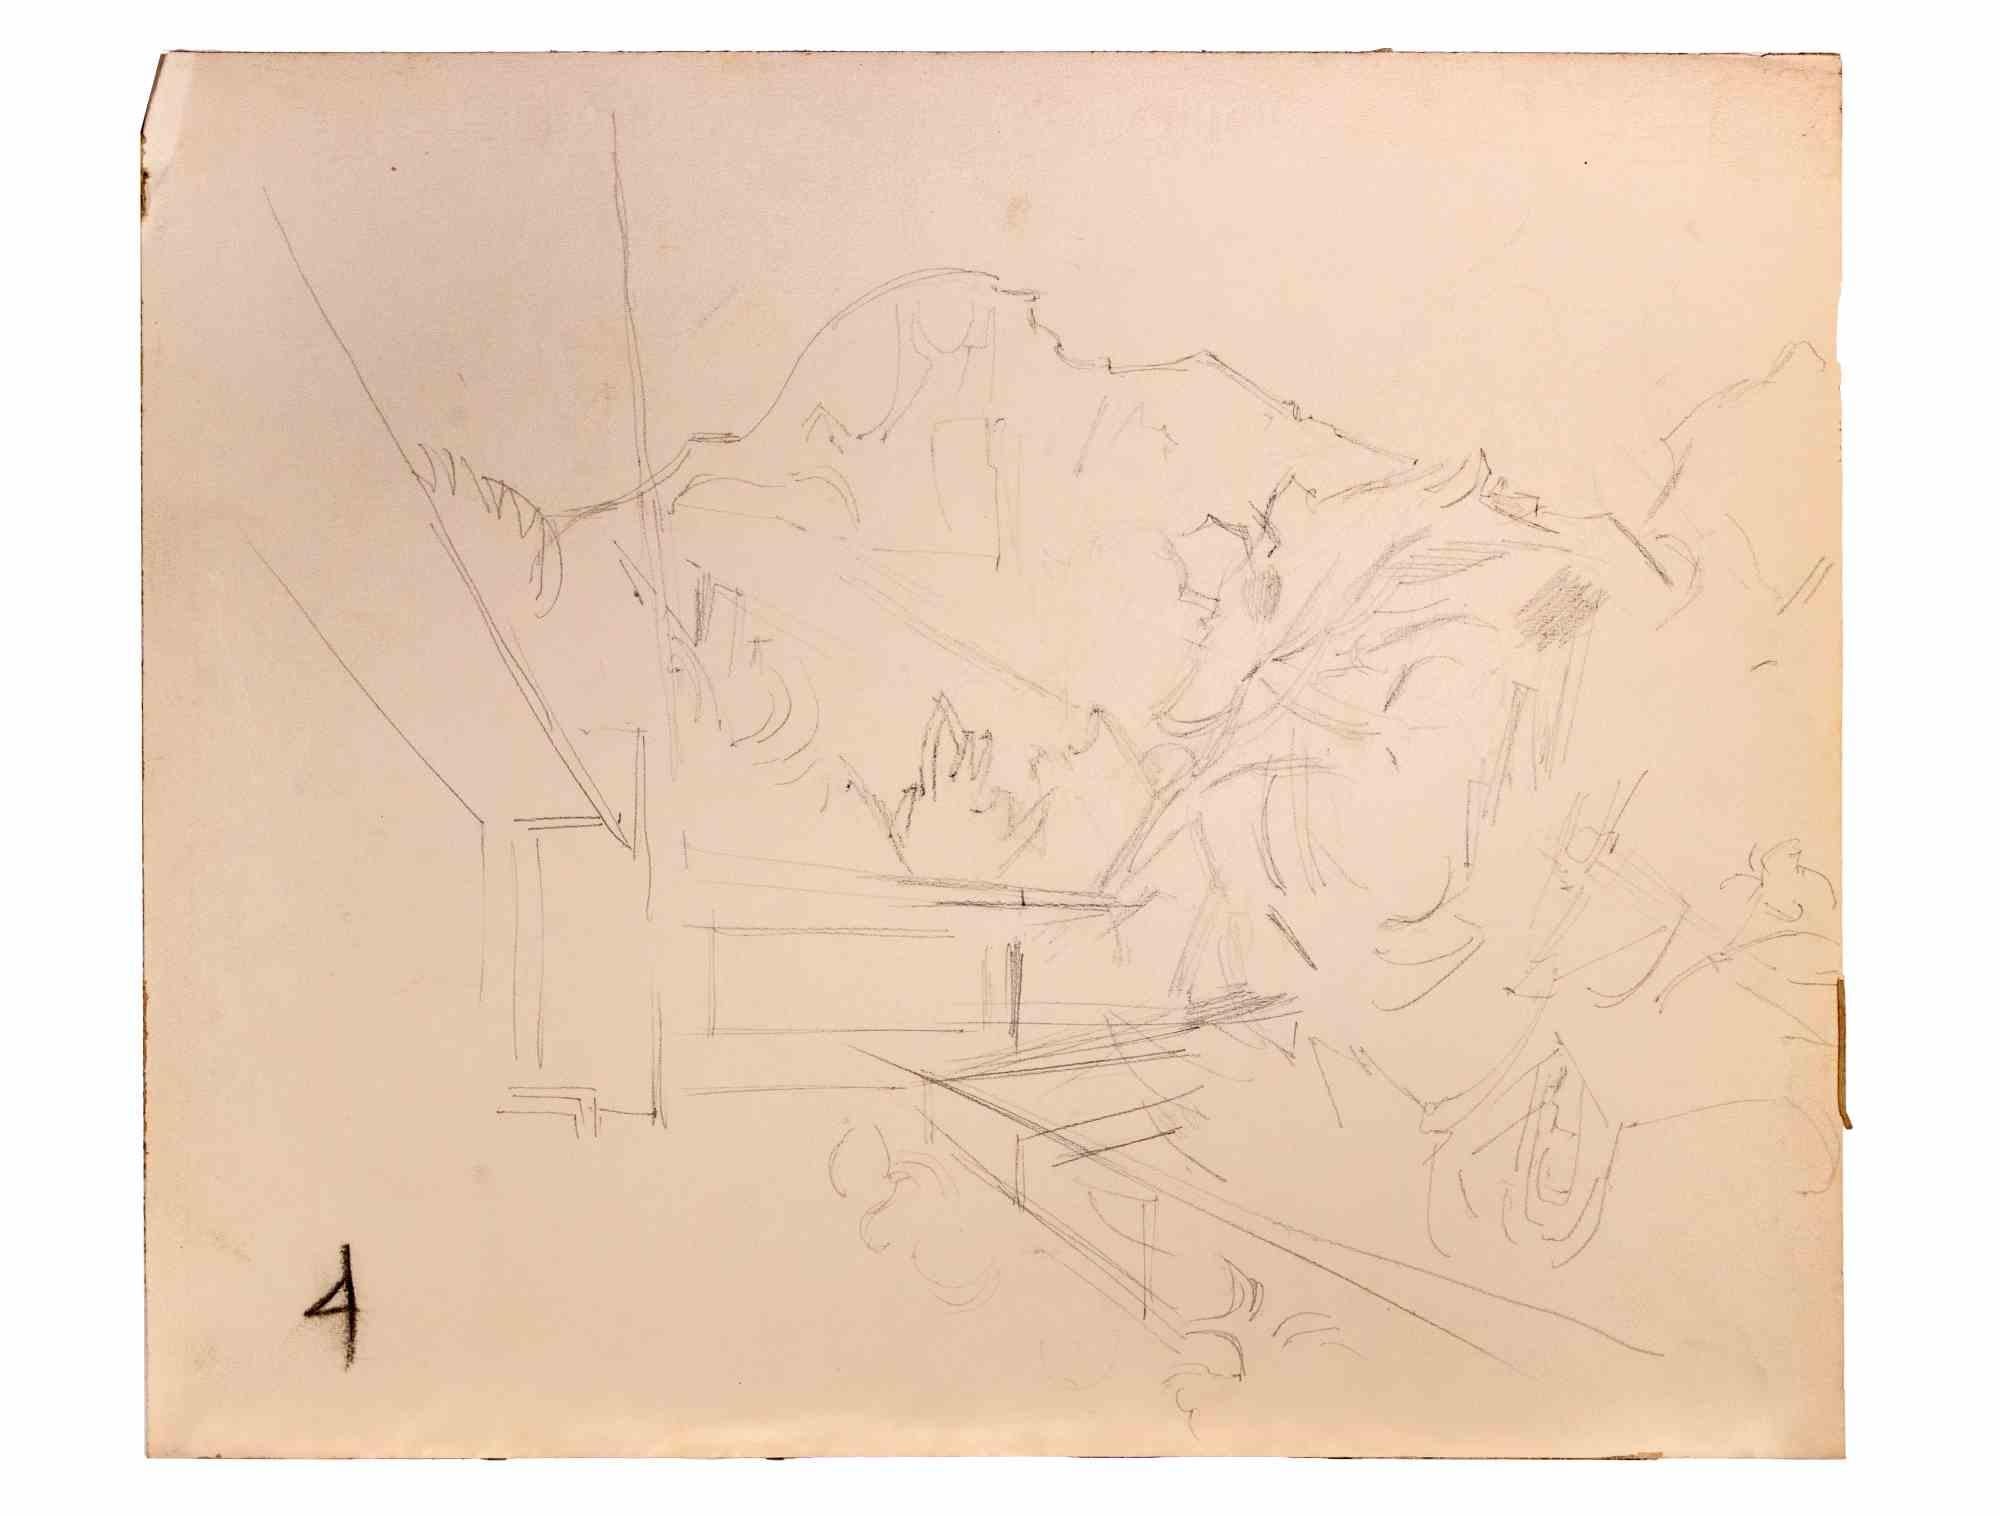 Paysage est un dessin au crayon réalisé par  Reynold Arnould  (Le Havre 1919 - Parigi 1980).

Bon état sur un papier jauni.

Pas de signature.

Reynold Arnould est né au Havre, en France, en 1919. Il a étudié à l'École des Beaux-Arts du Havre, et a